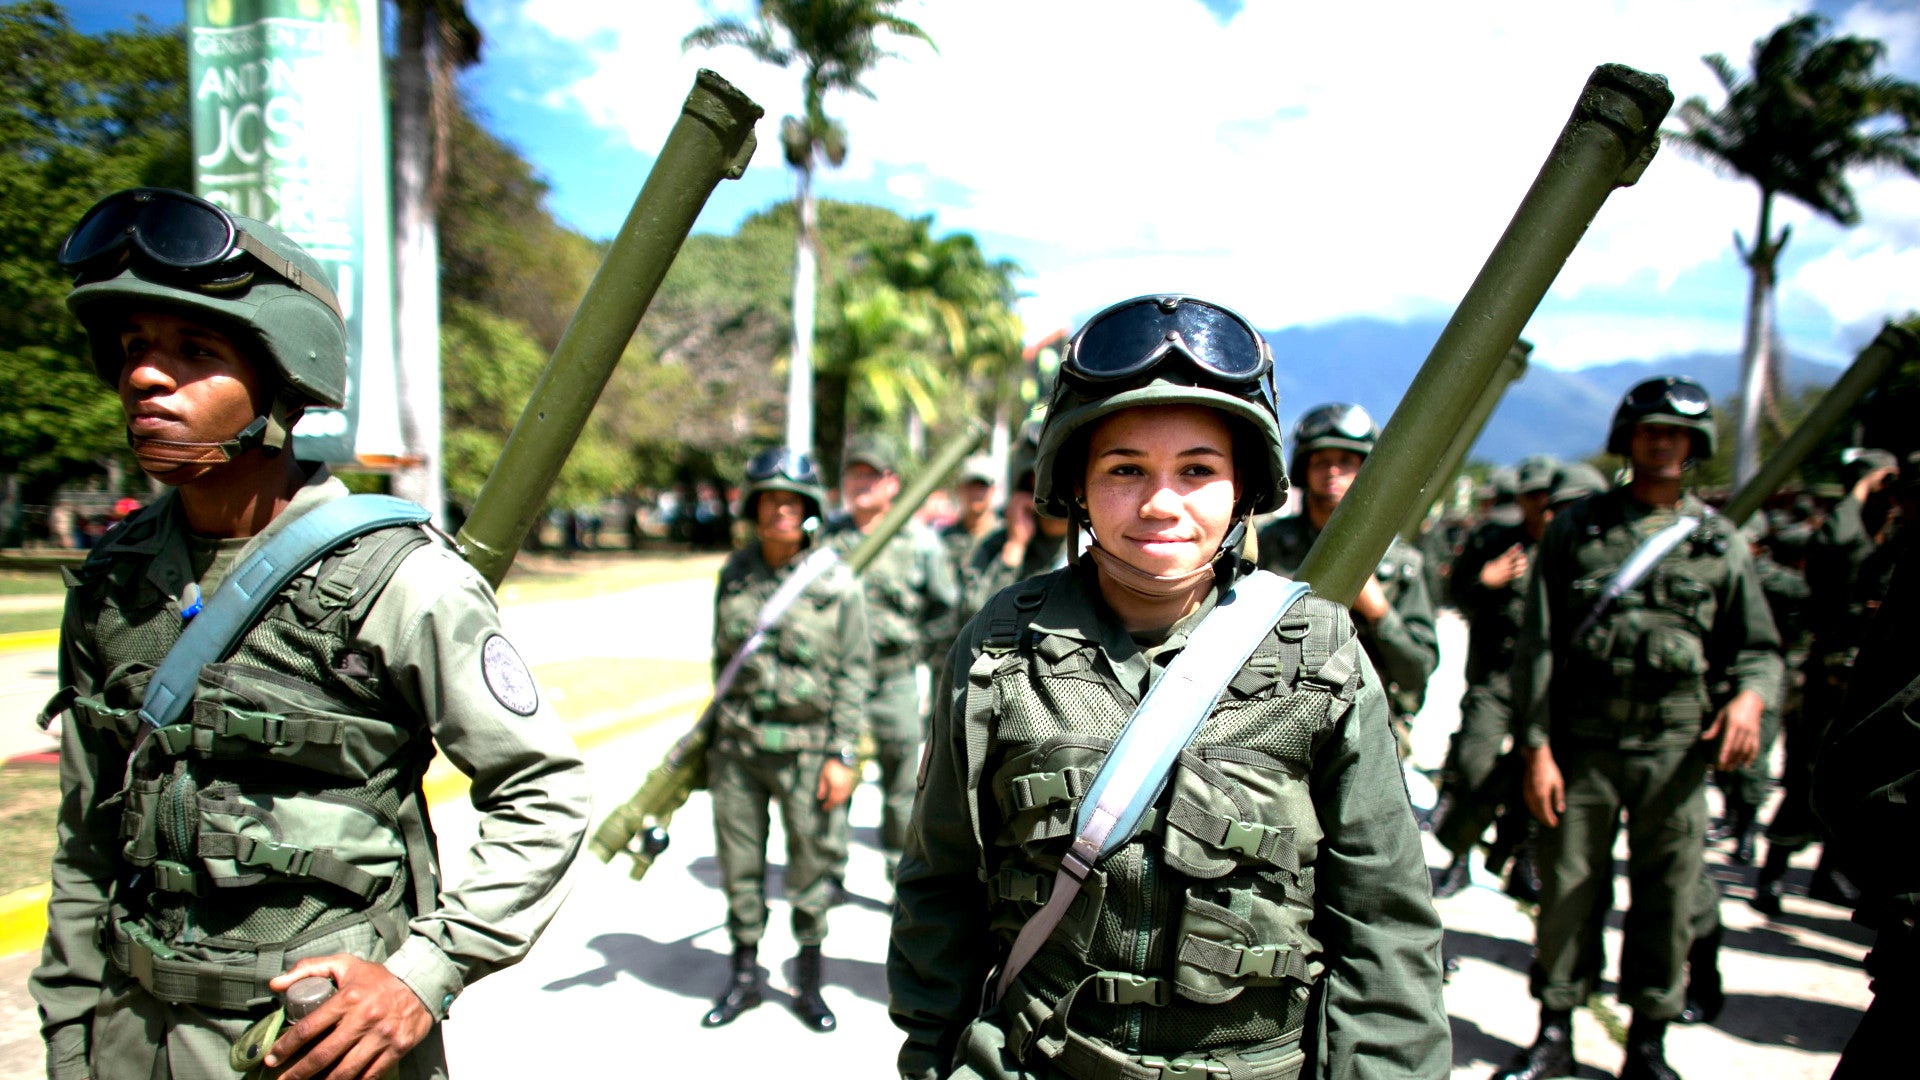 Venezuela’s Shoulder-Fired Missiles At Risk Of Ending Up On The Black Market